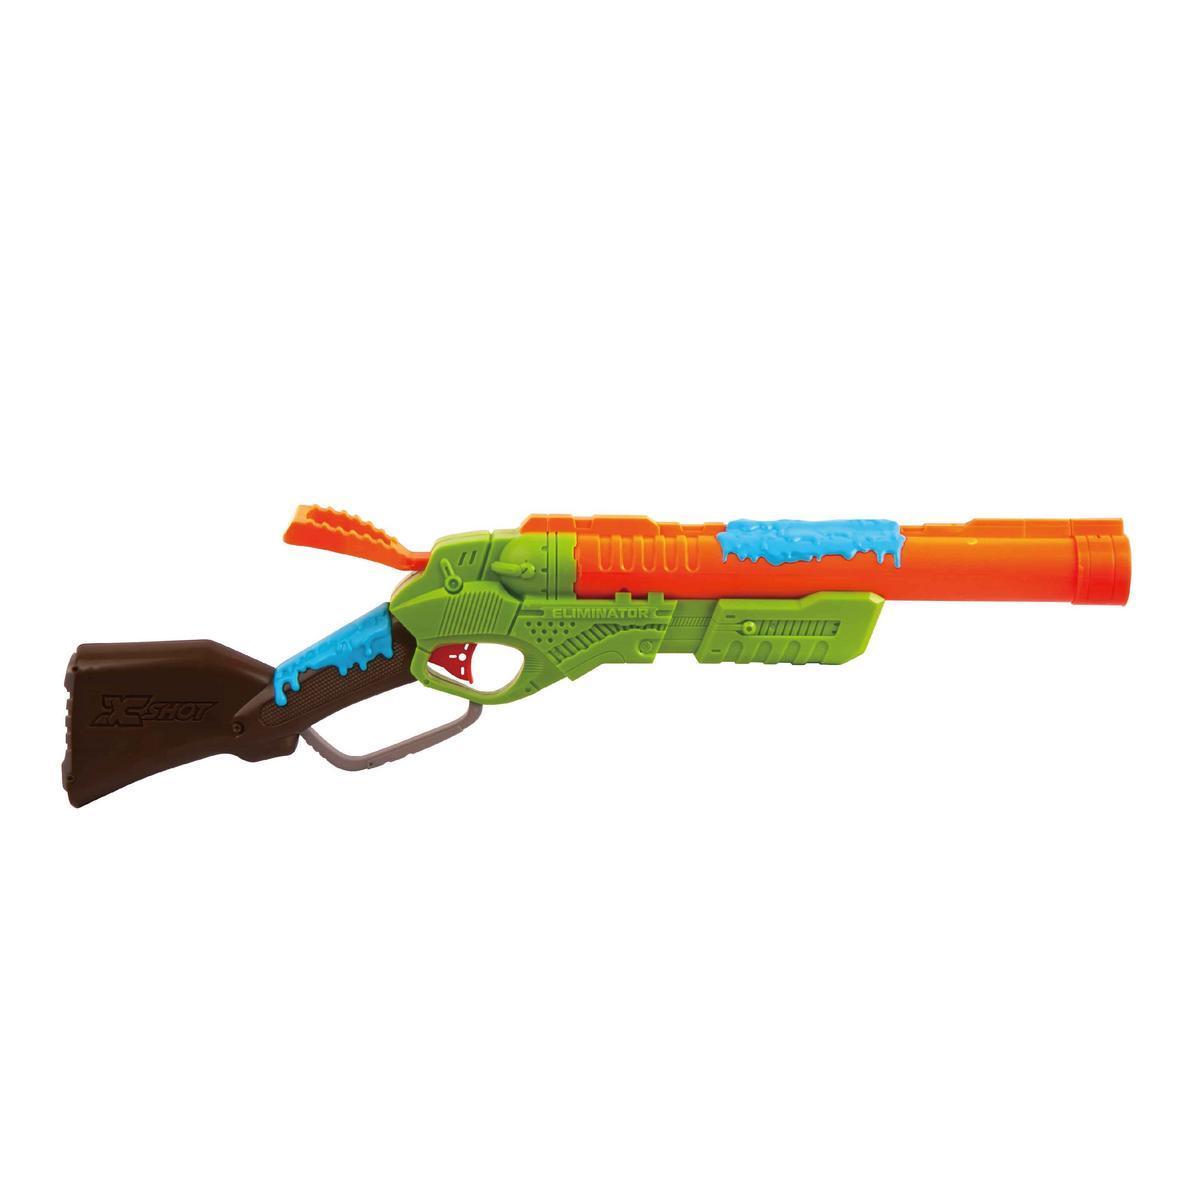 Fusil Eliminator et accessoires - Plastique - 67 x 7 x 21 cm - Multicolore